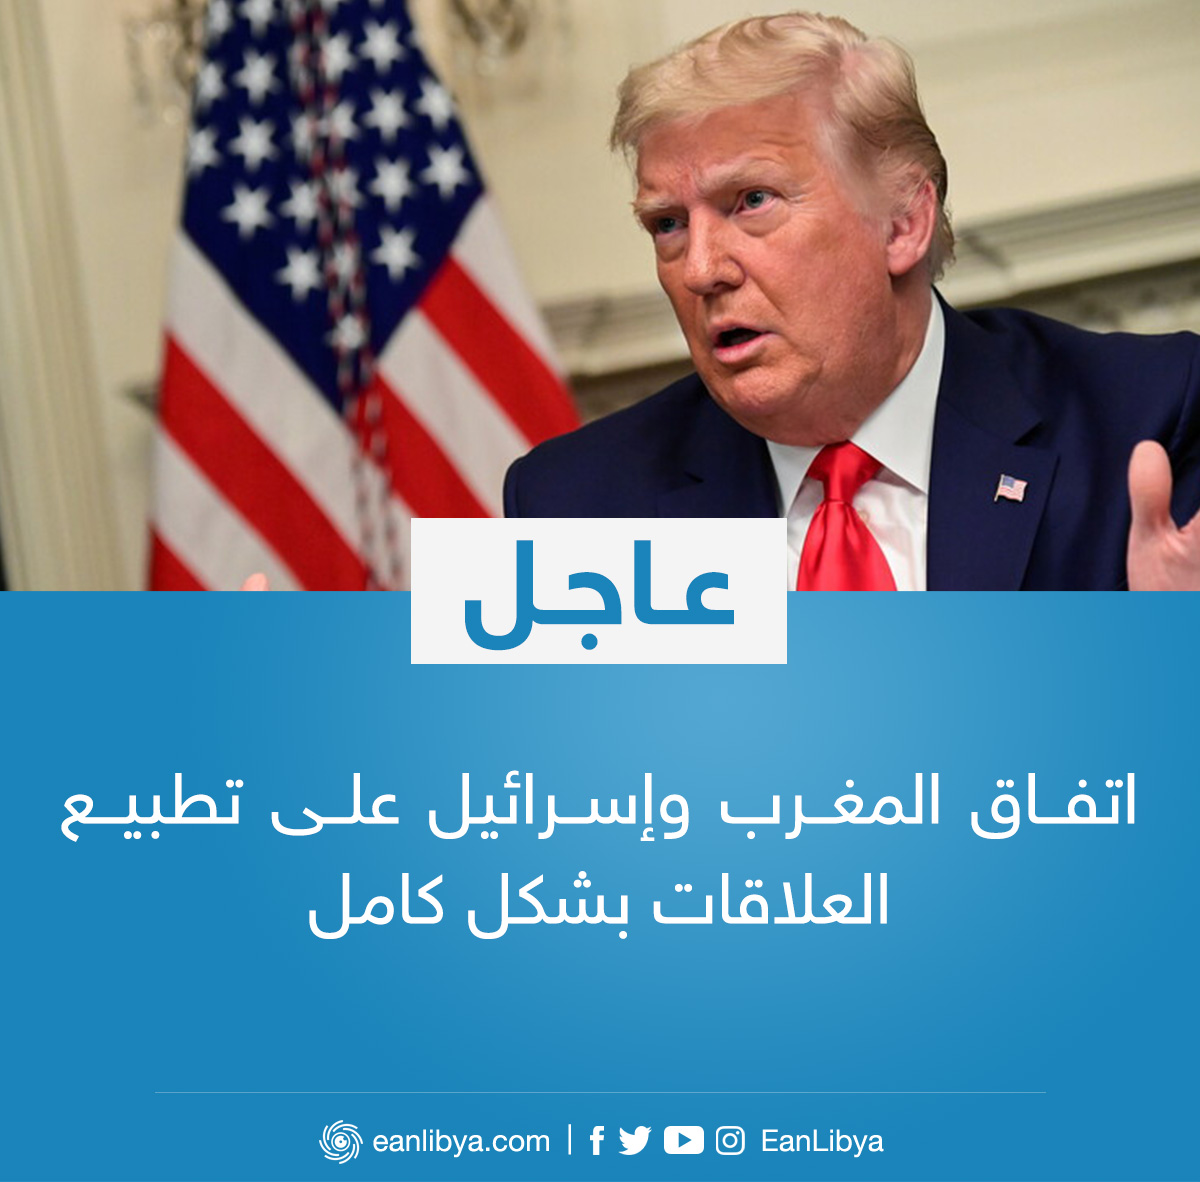 عاجل الرئيس الأمريكي دونالد ترامب يُعلن اتفاق المغرب وإسرائيل على تطبيع العلاقات بشكل كامل عين ليبيا